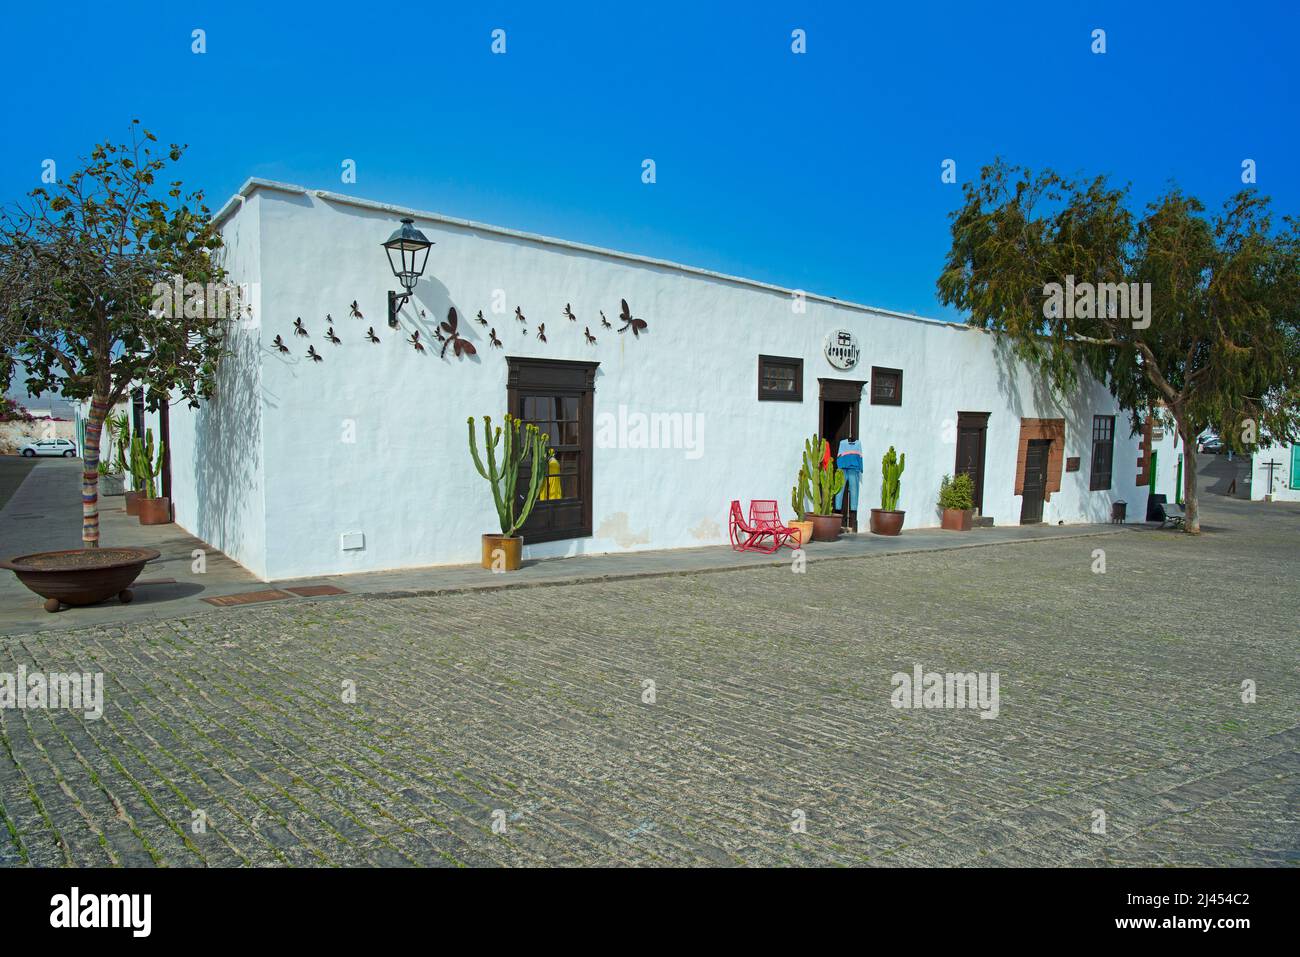 Geschäfte und Läden in typischen kanarischen Häusern, Teguise, ehemalige Hauptstadt der Insel Lanzarote, kanarische Inseln, Kanaren, Spanien Stock Photo